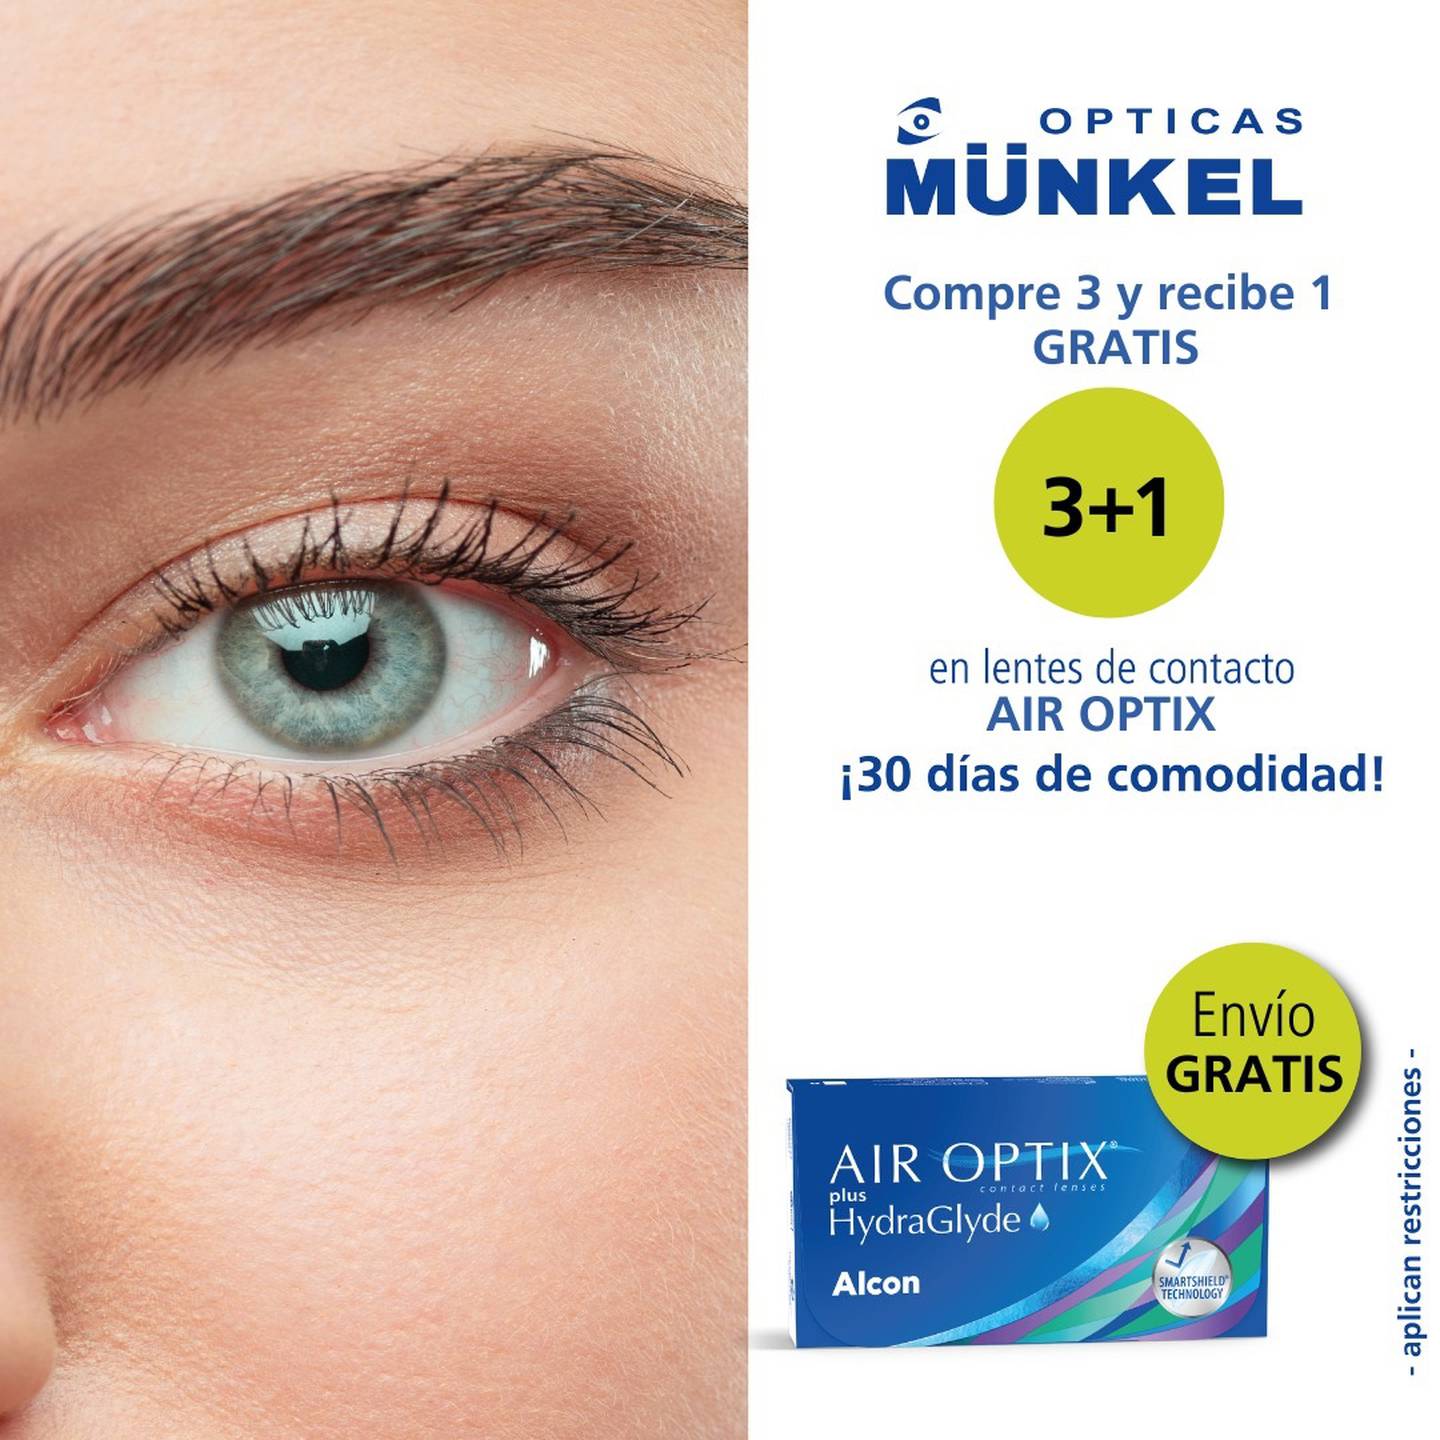 En Ópticas Münkel hay una excelente promo en lentes de contacto durante abril, compra 3 cajas y le dan 1 gratis